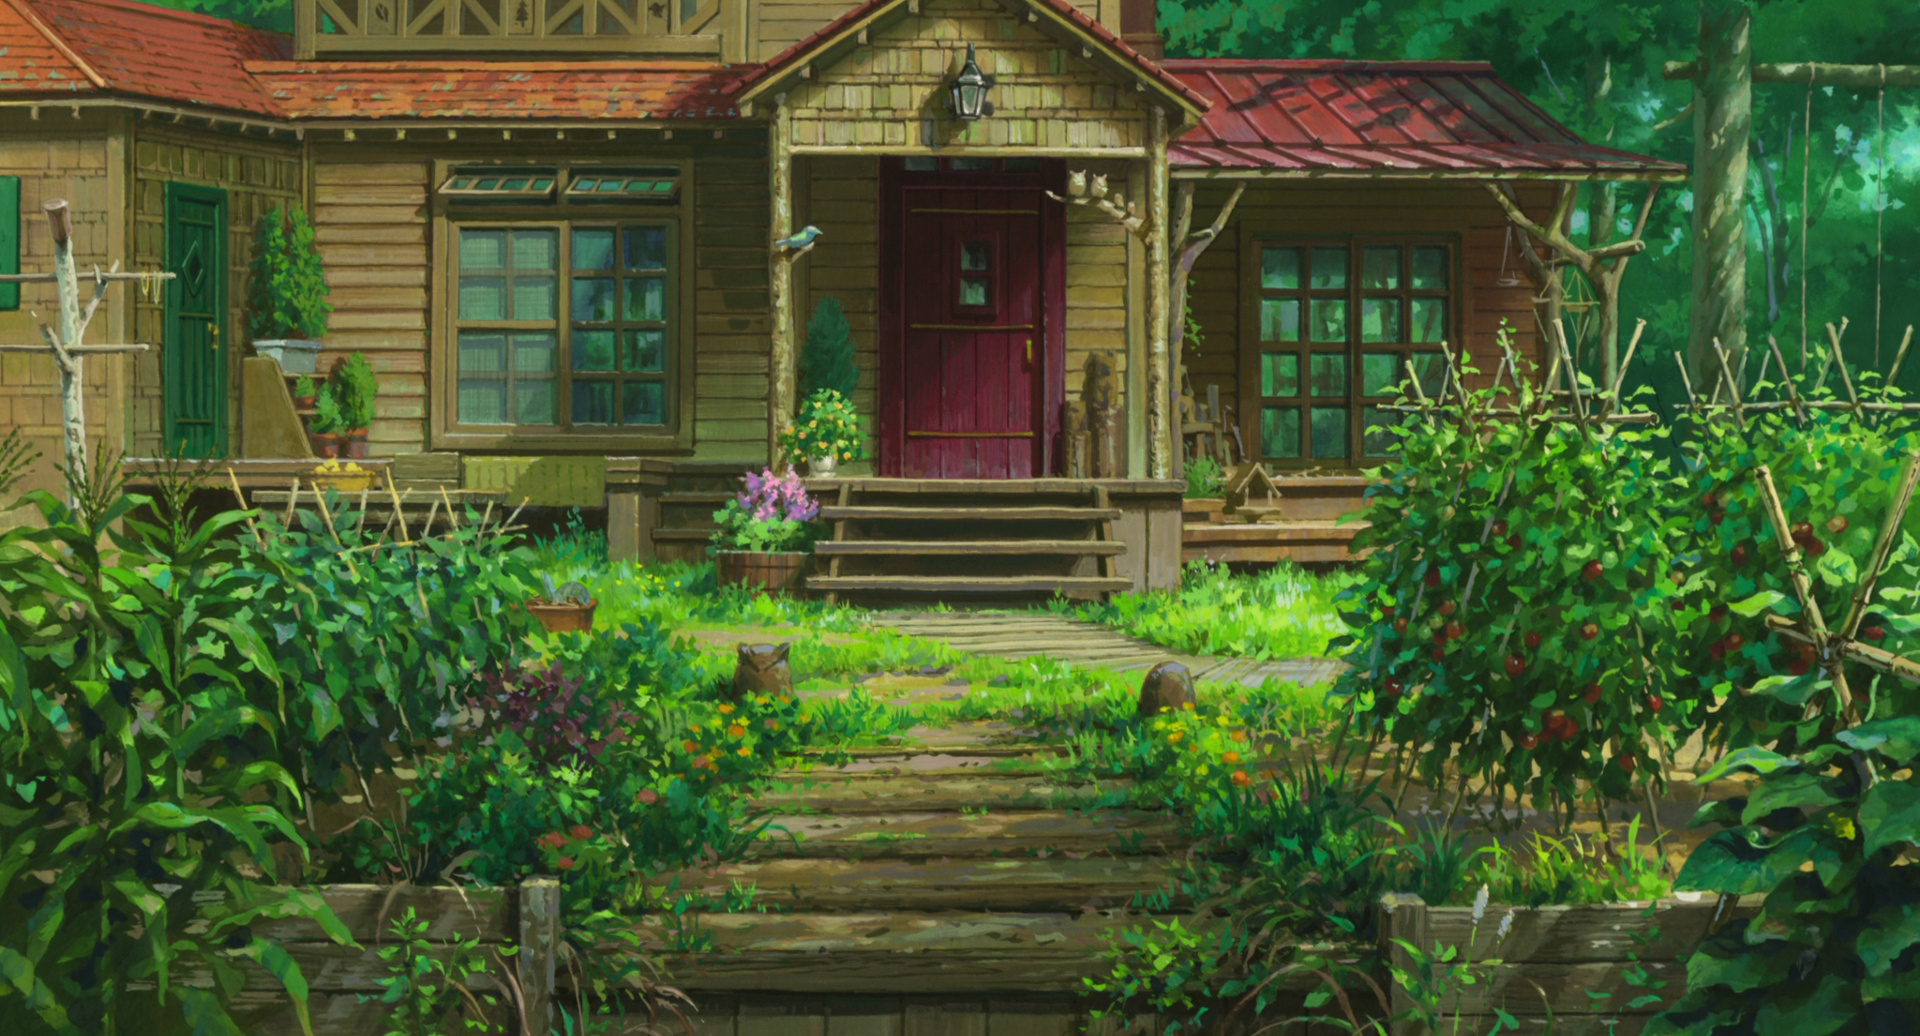 Bạn yêu thích các bộ phim hoạt hình của Studio Ghibli? Hãy xem các hình ảnh liên quan để tìm hiểu thêm về những nhân vật dễ thương và câu chuyện đầy kỳ diệu trong các bộ phim của họ. Các hình ảnh này sẽ khiến bạn xao xuyến và cảm thấy thích thú với thế giới phong phú của Studio Ghibli.